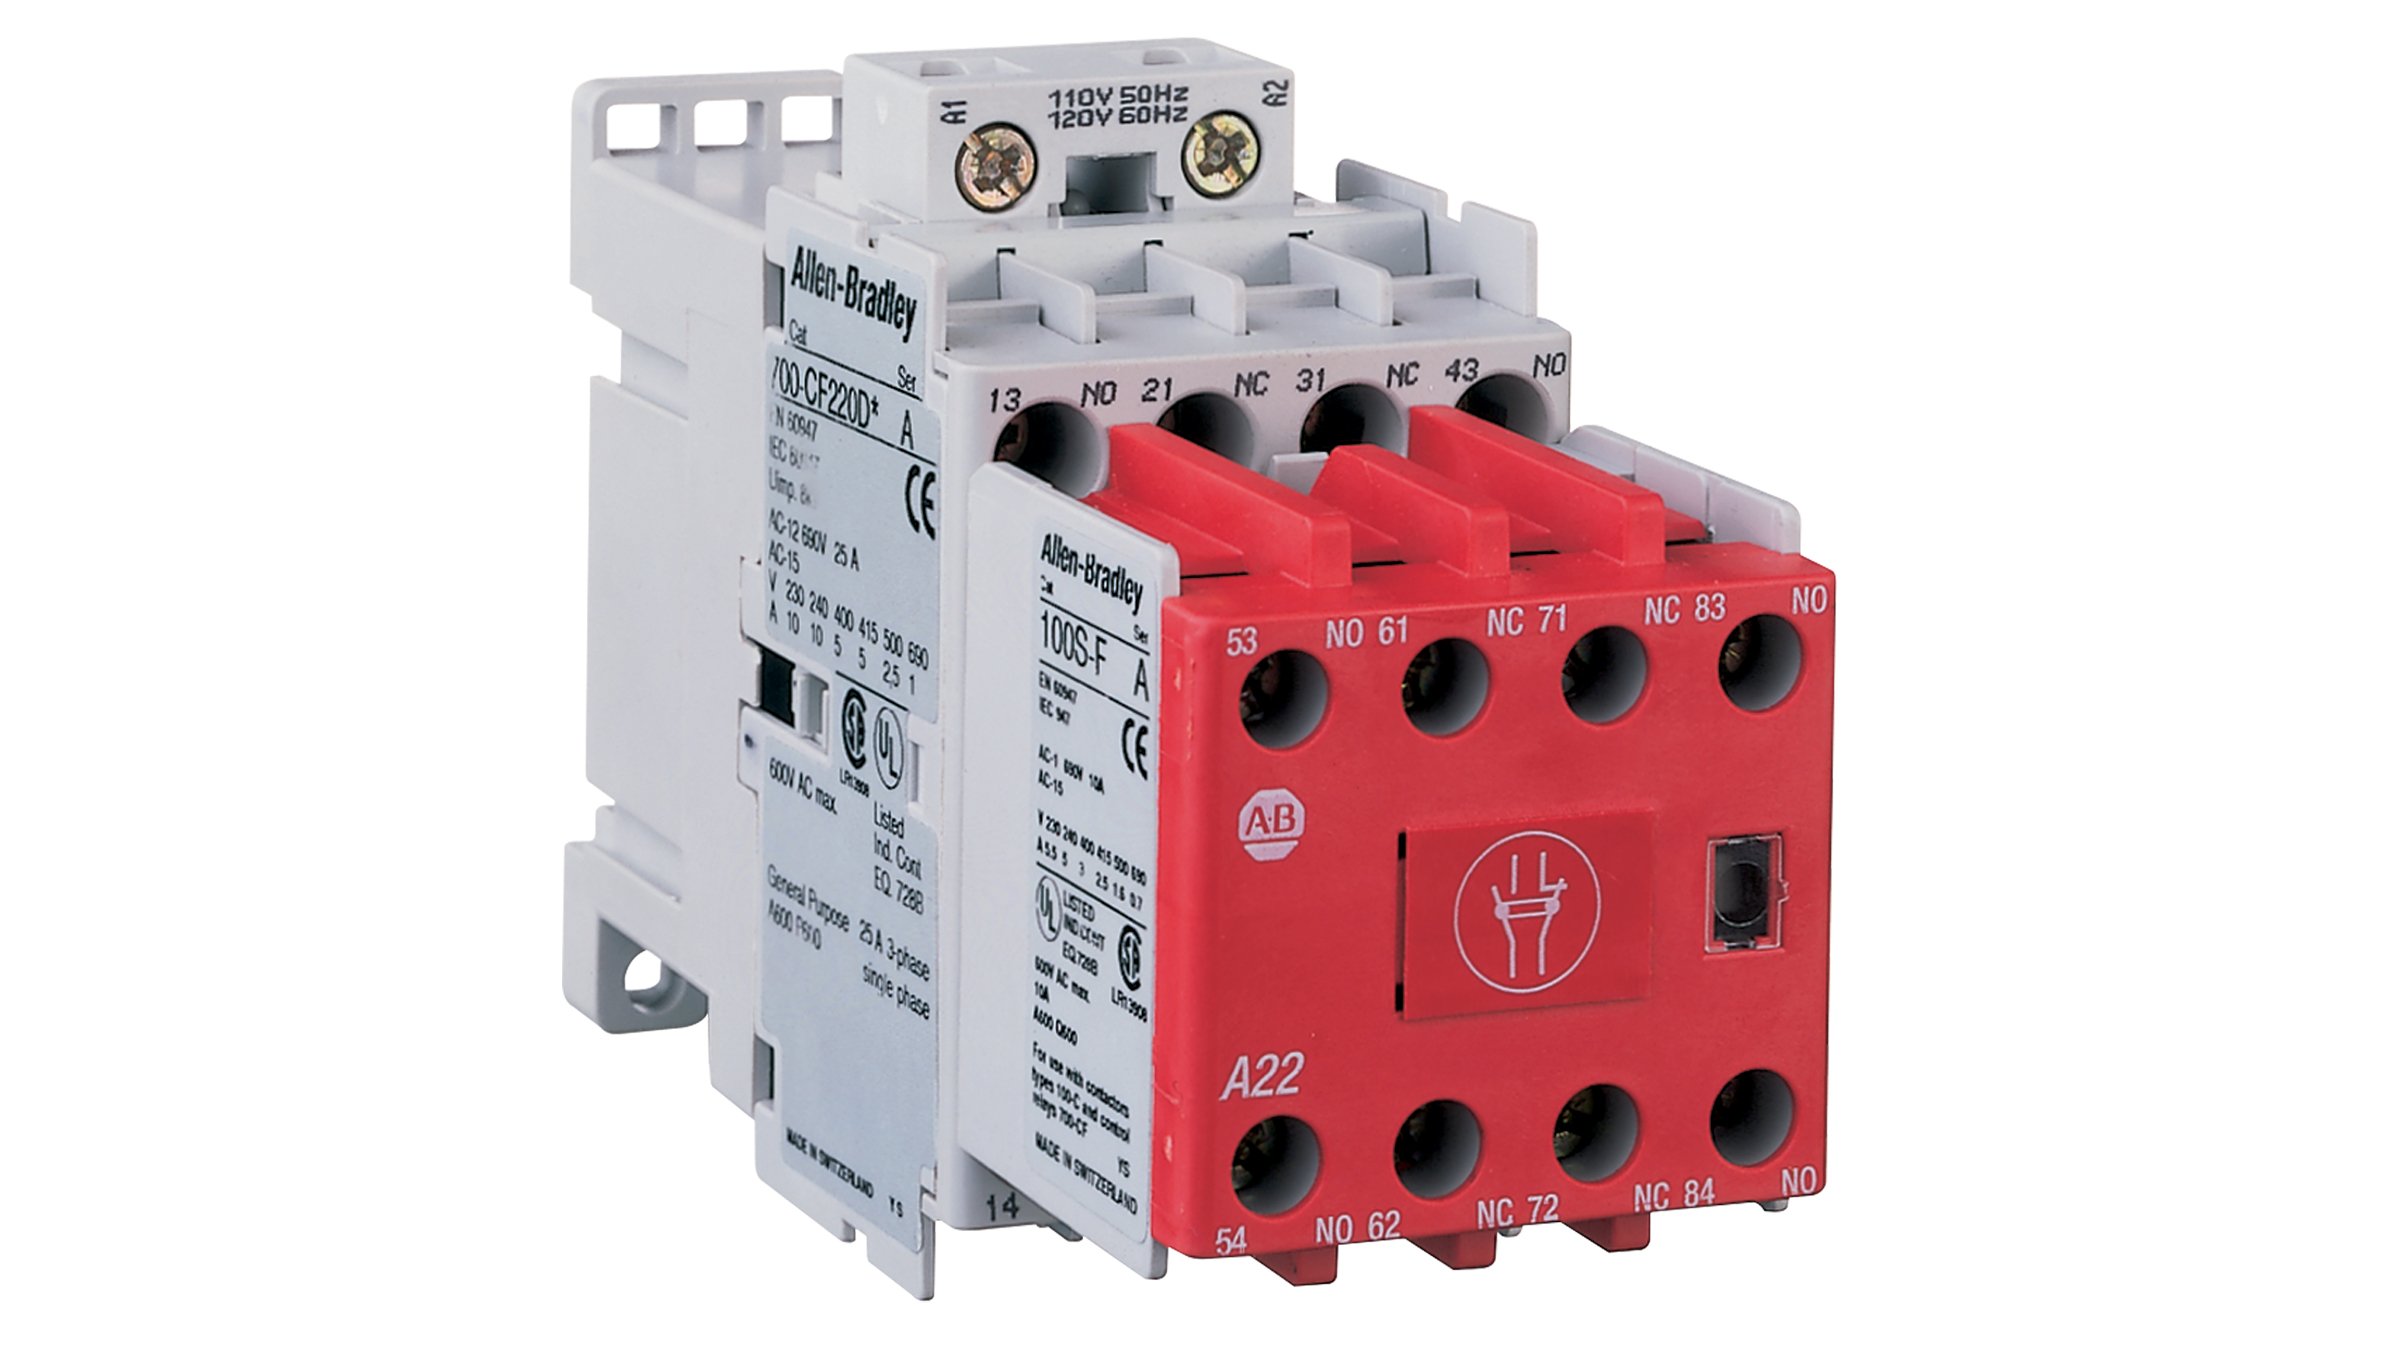 Allen-Bradley Bulletin 700S-CF IEC セーフティ制御リレーは、安全用途向けのフィードバック回路に必要とされる、機械的リンク接点またはミラー接点として機能するリレーです。